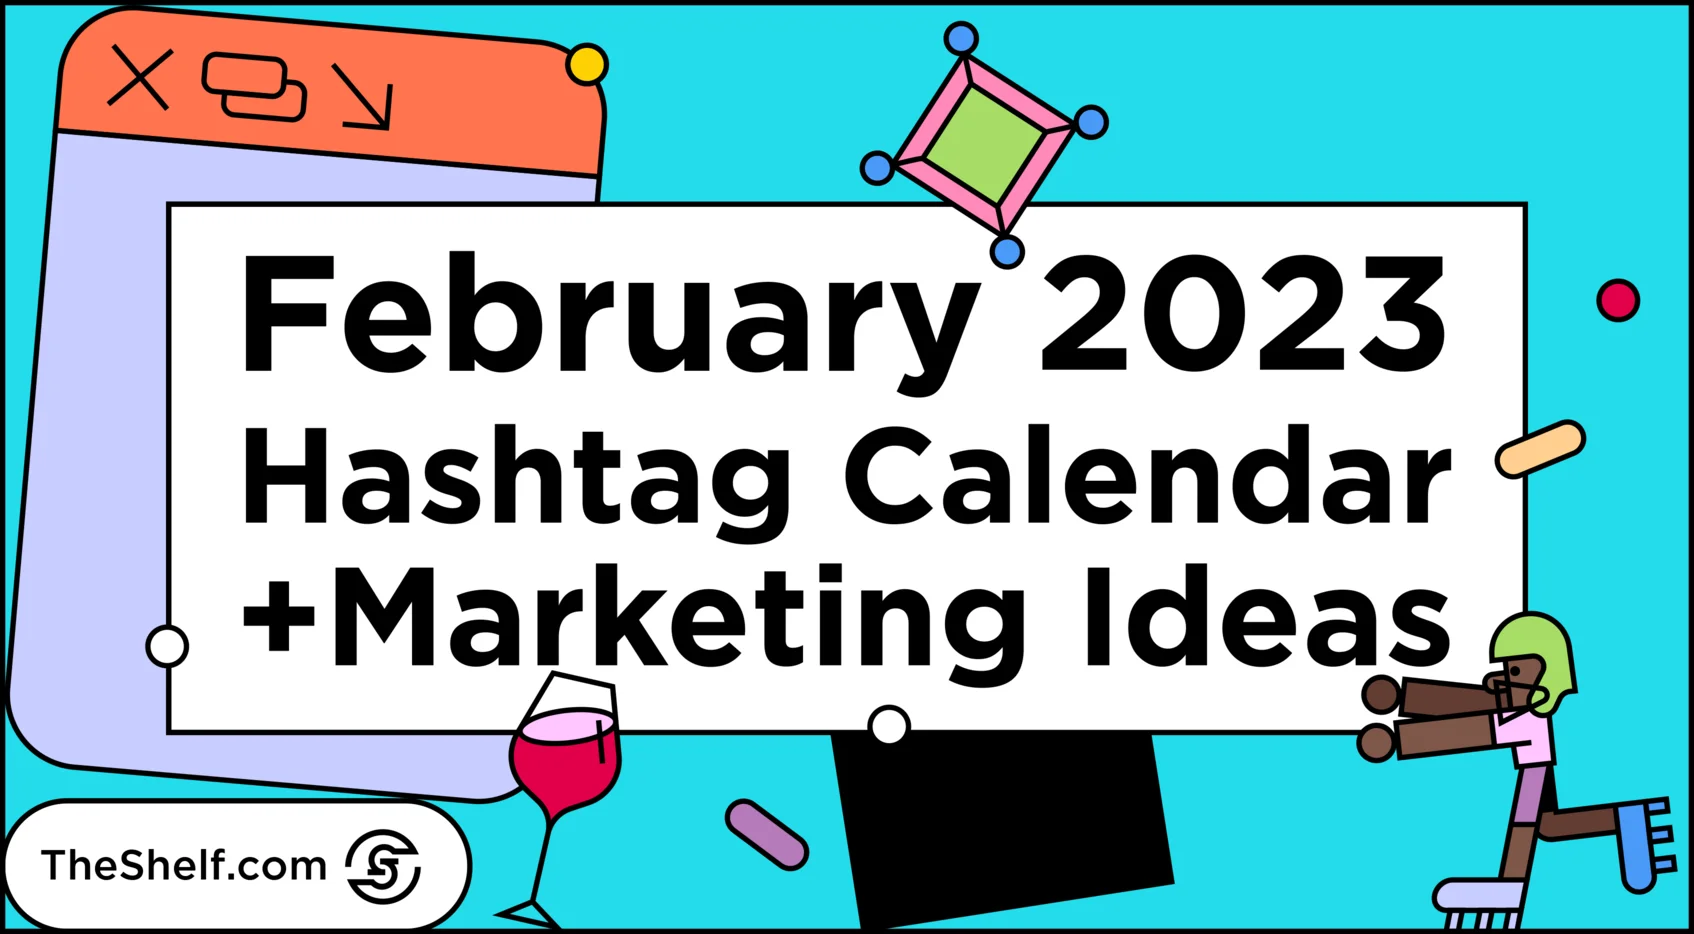 February 2023 hashtag calendar